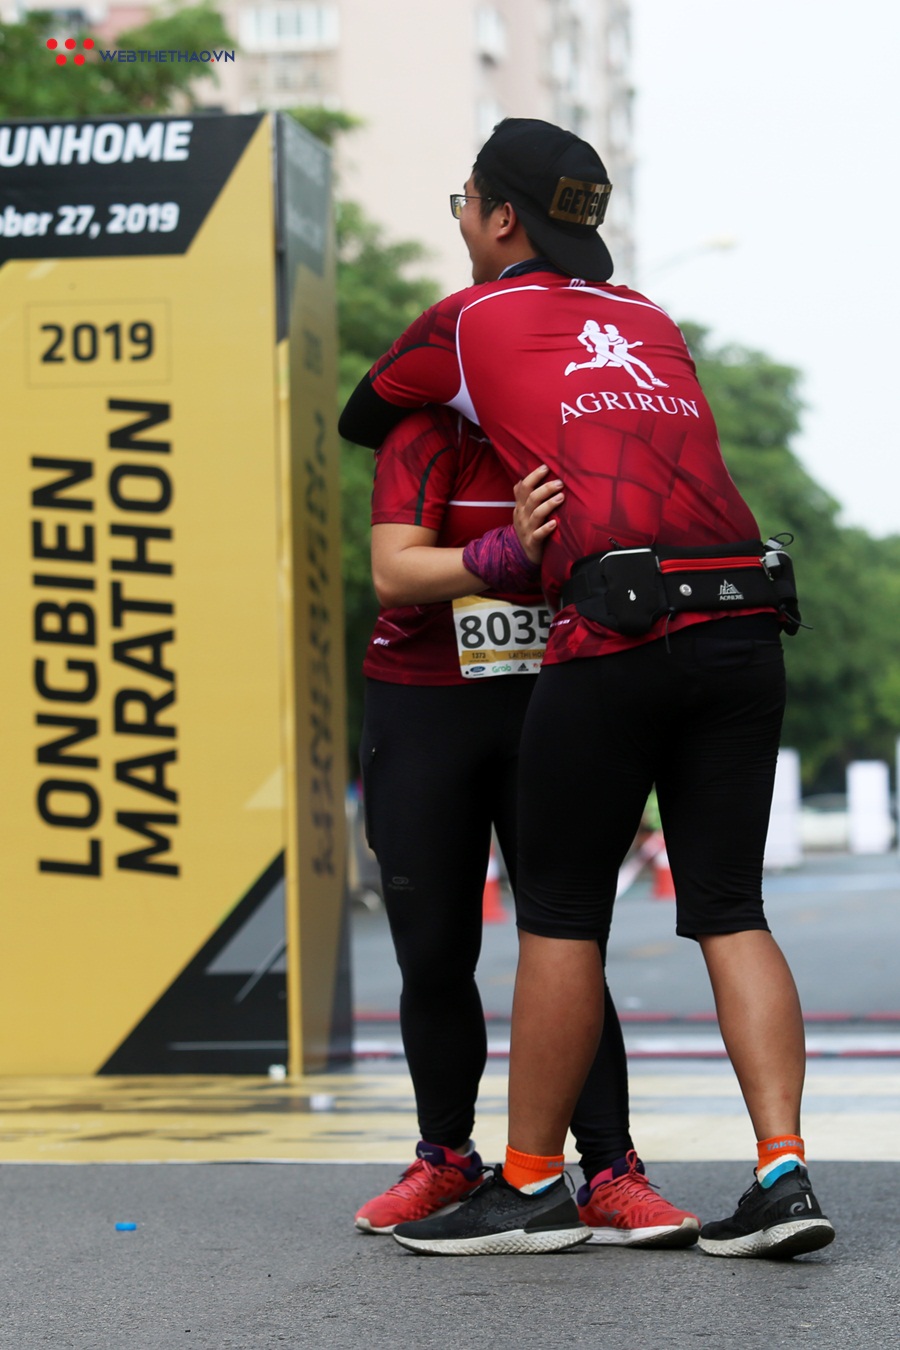 Sức mạnh từ những chiếc ôm siết chặt trên đường chạy Longbien Marathon 2019